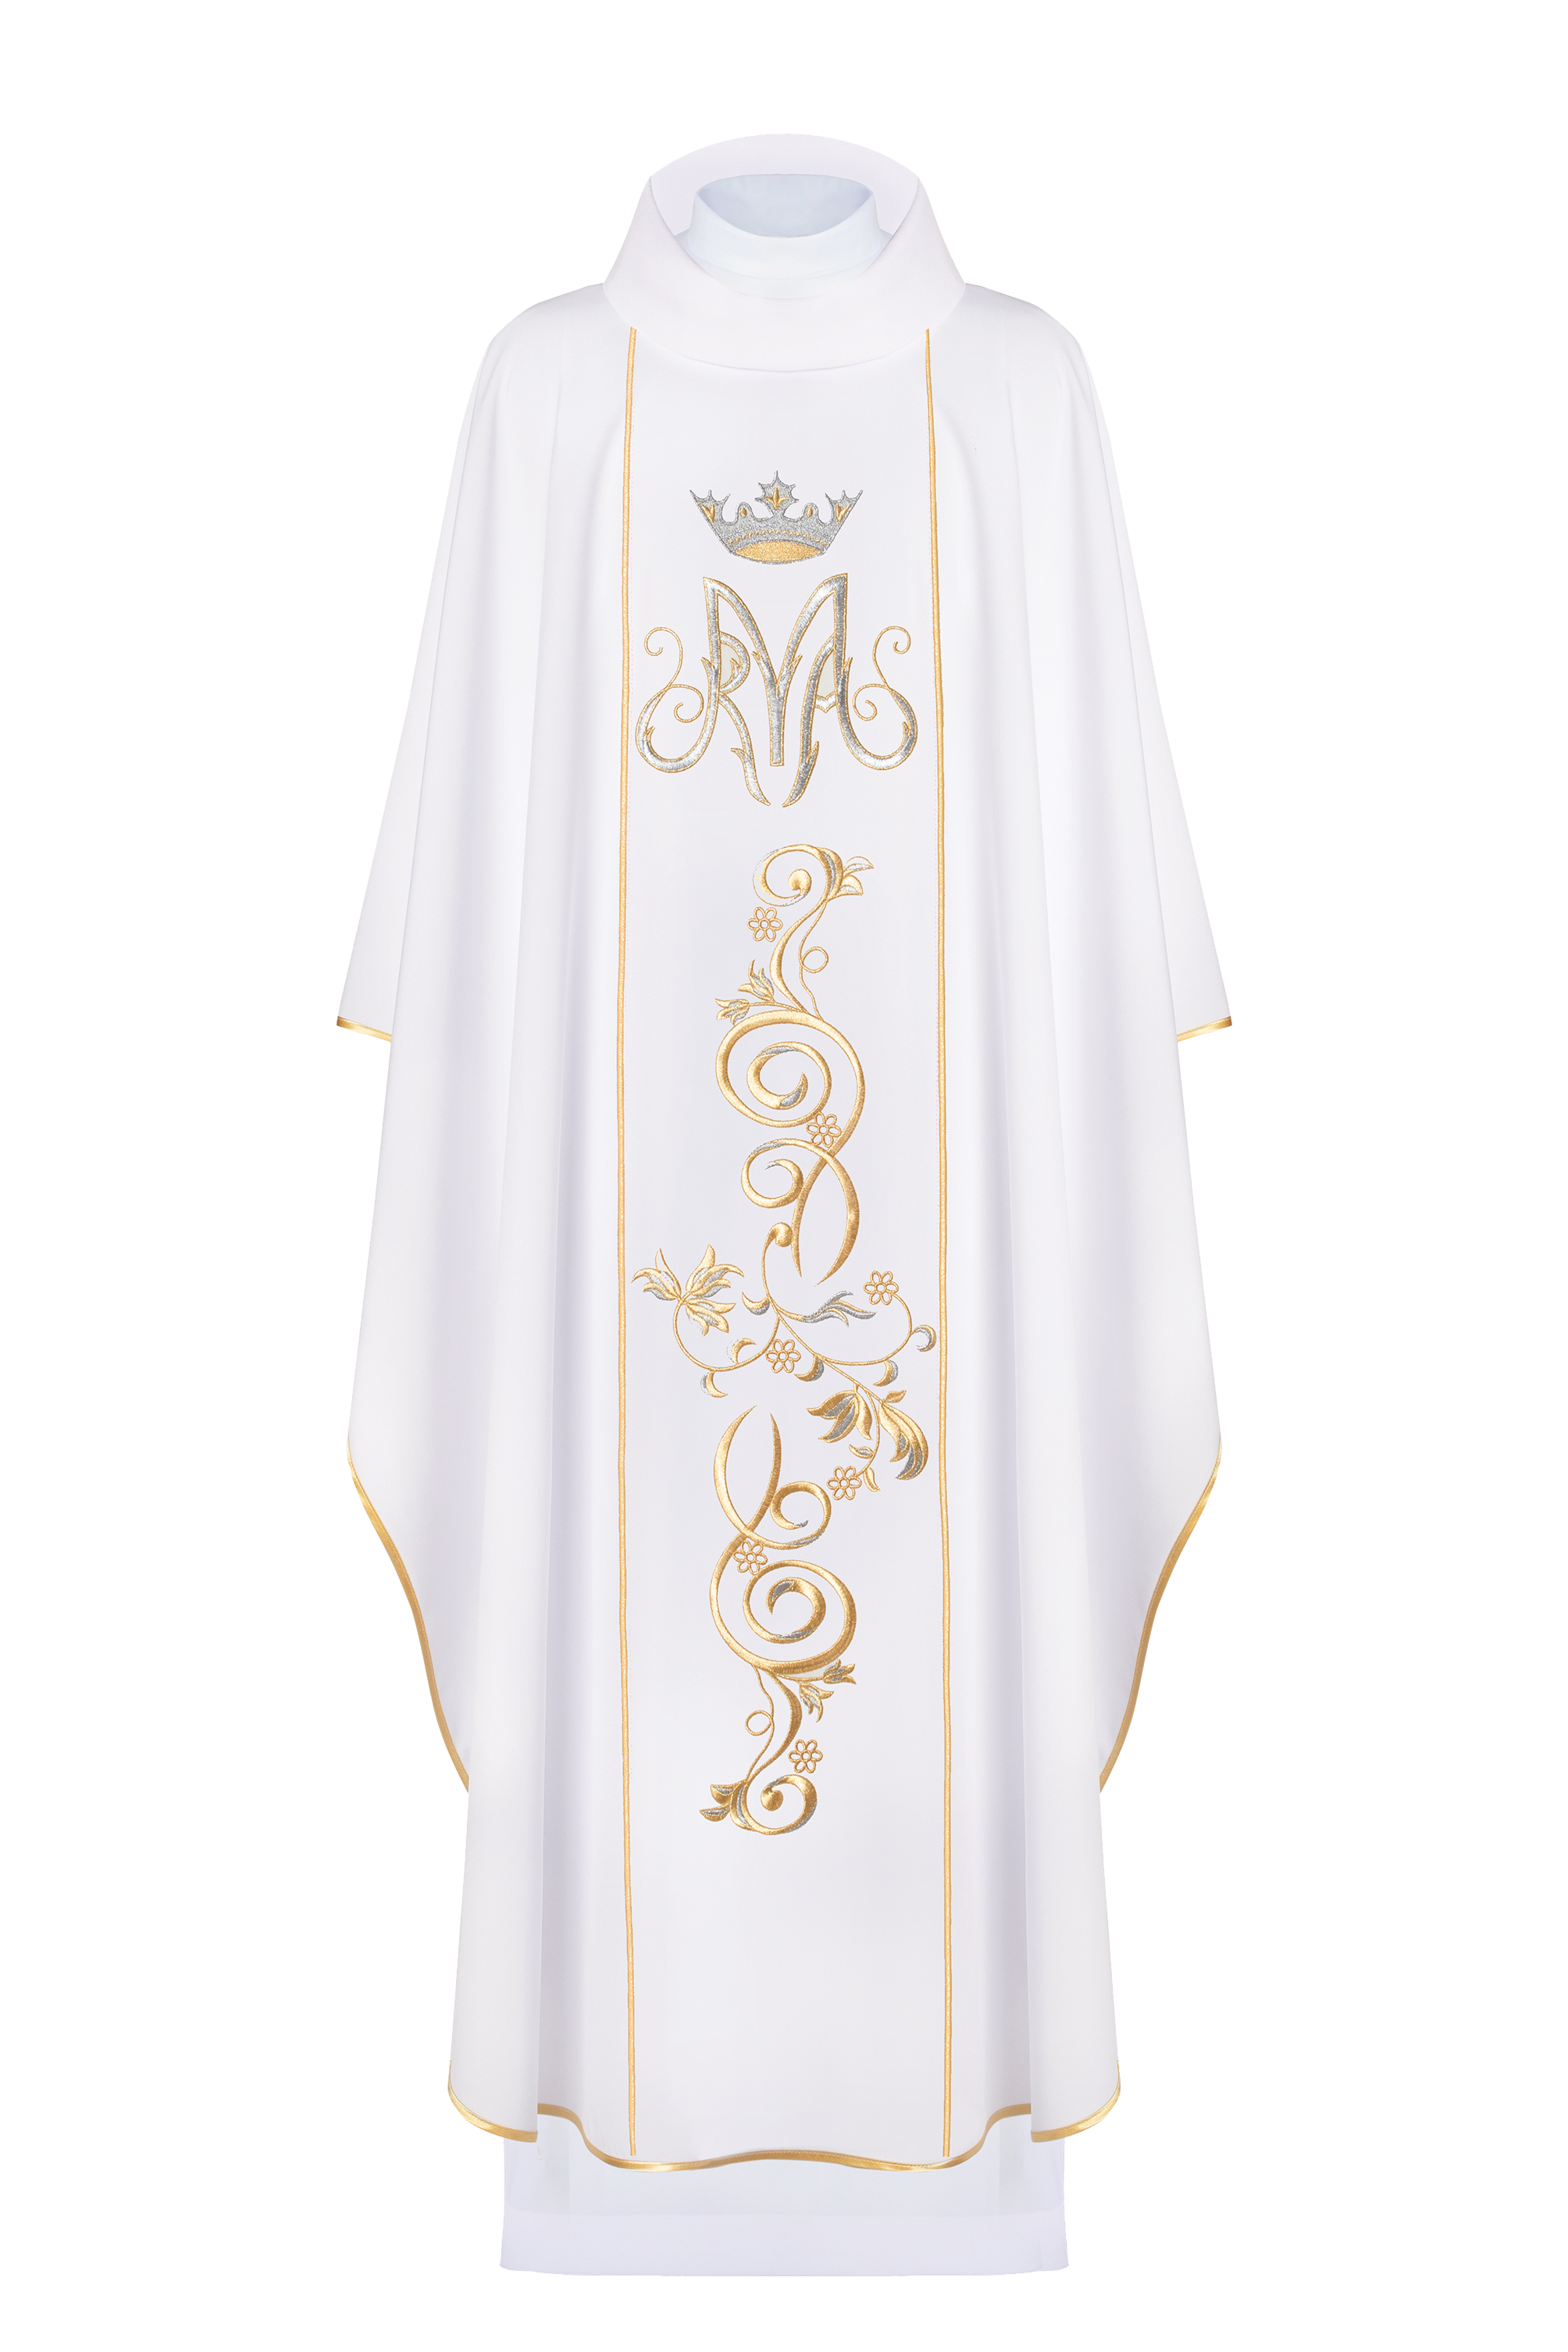 Ornat liturgiczny Maryjny z pasem haftowanym w kolorze białym